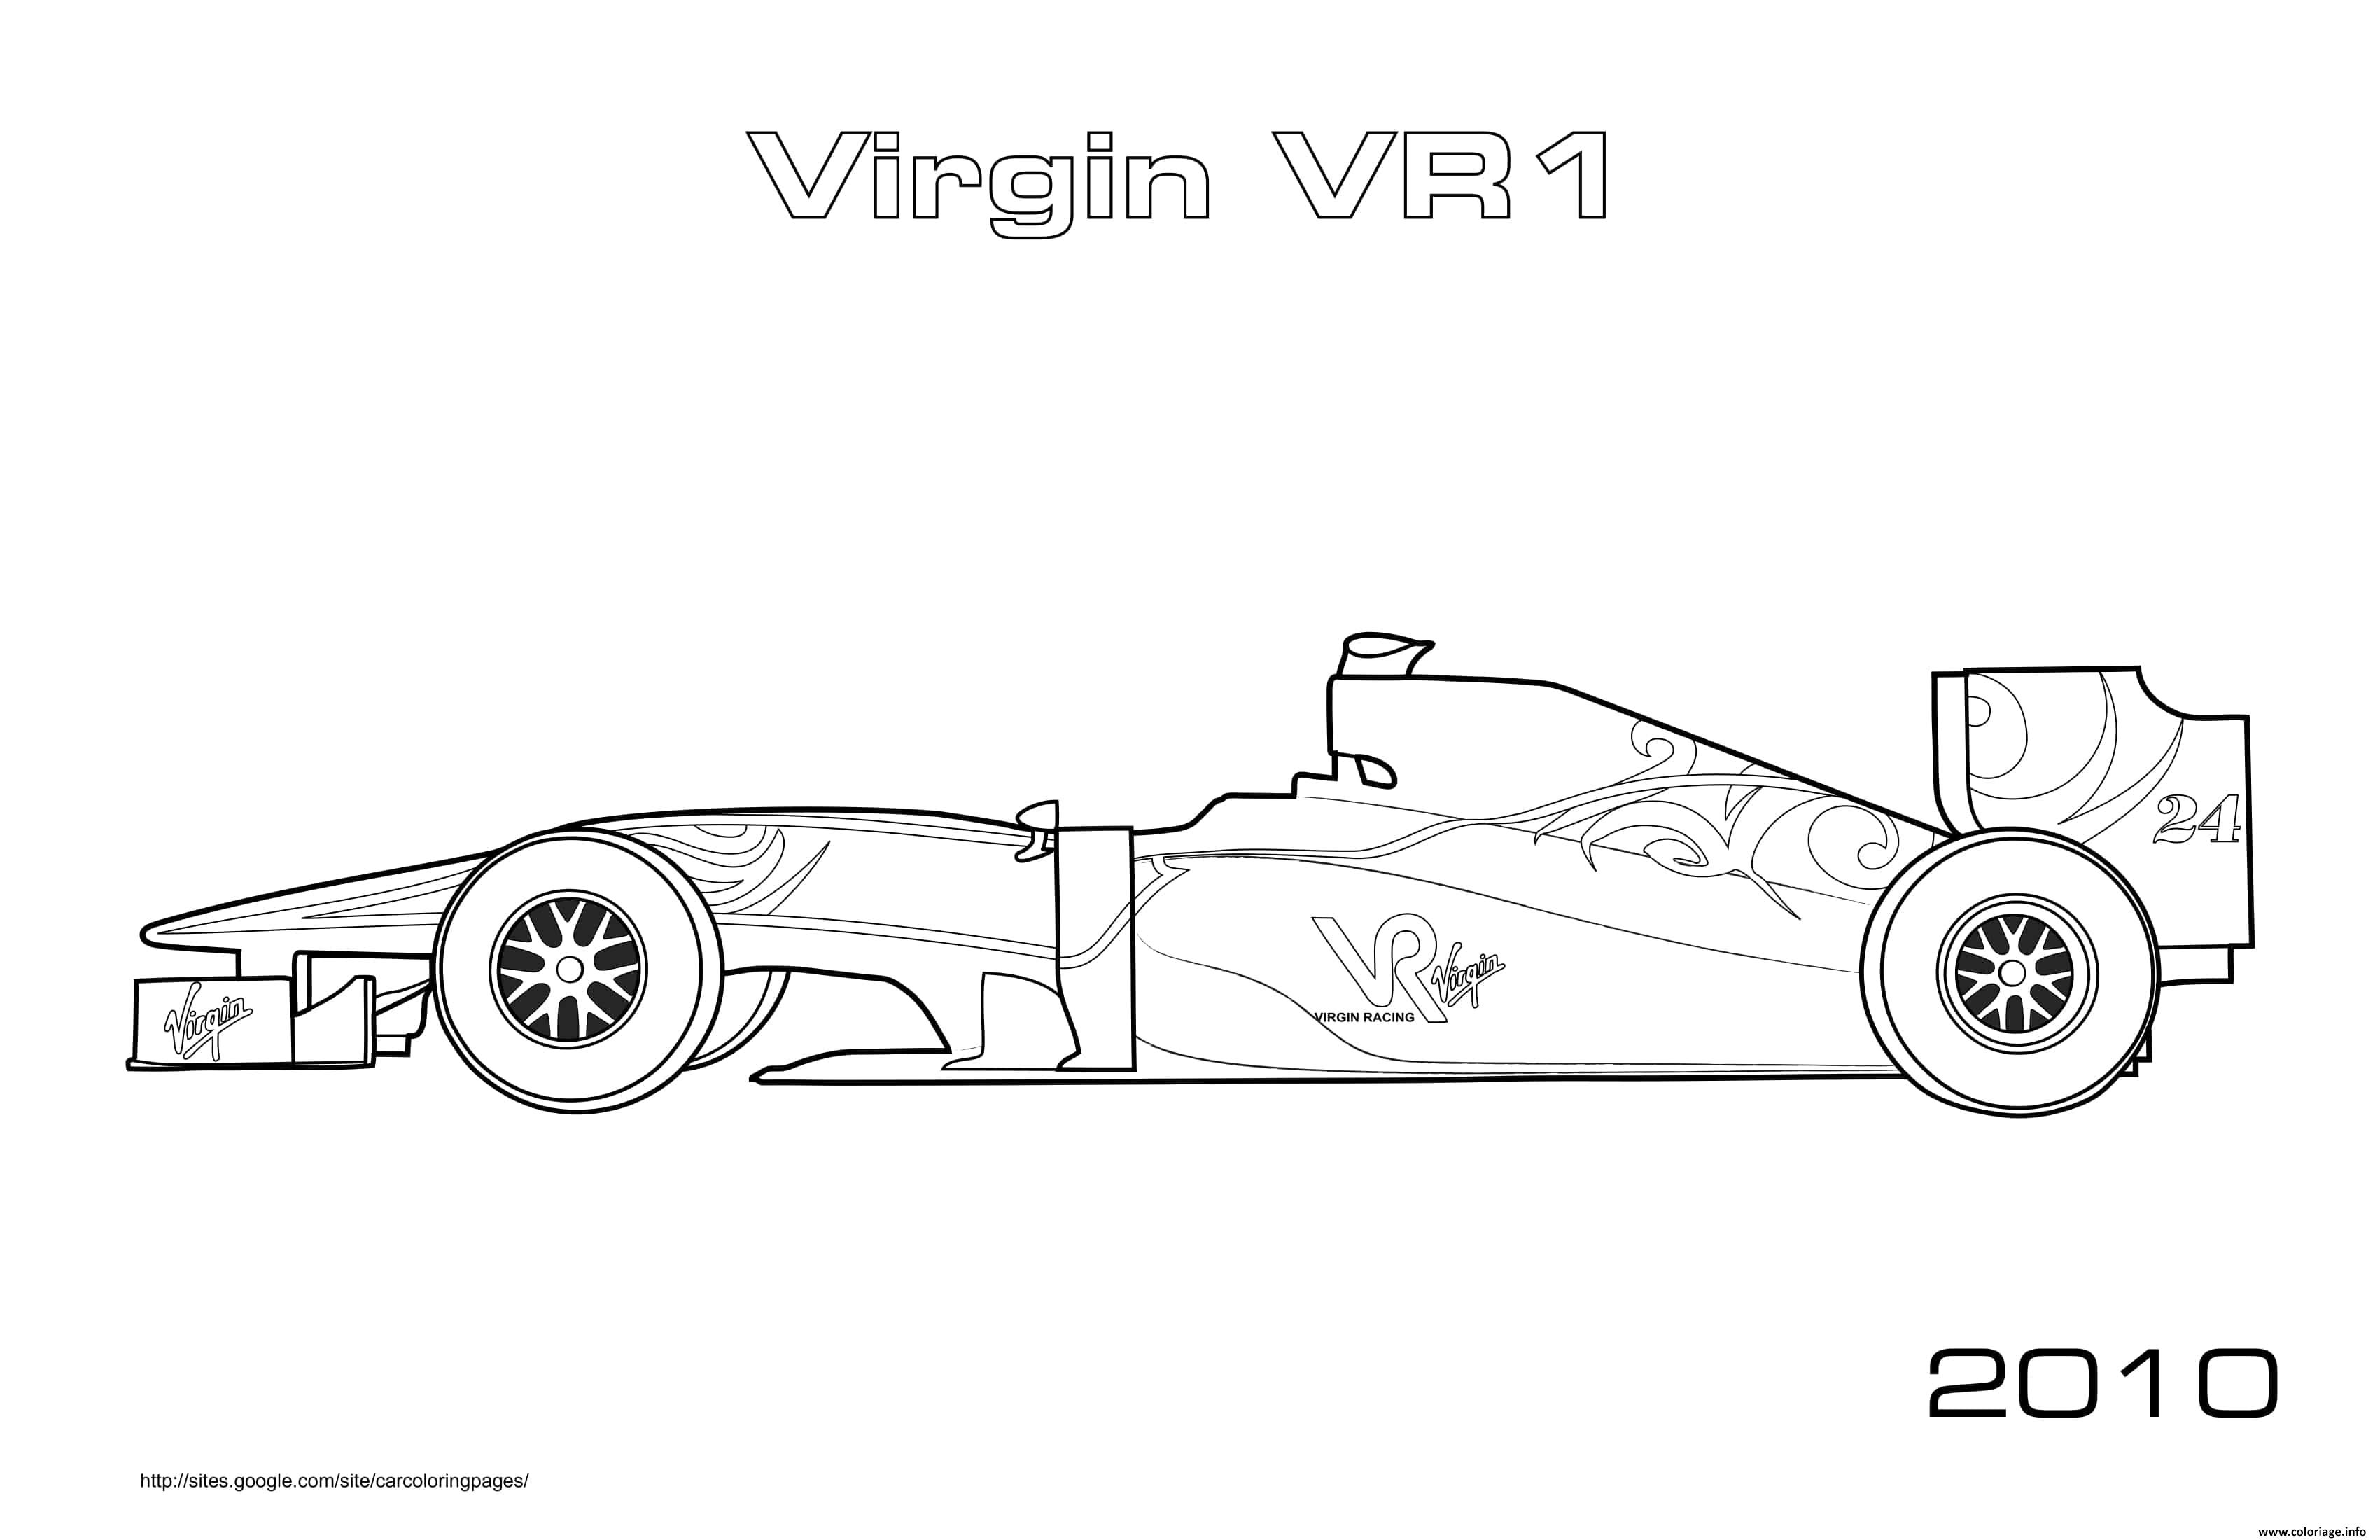 Dessin Sport F1 Virgin Vr1 2010 Coloriage Gratuit à Imprimer